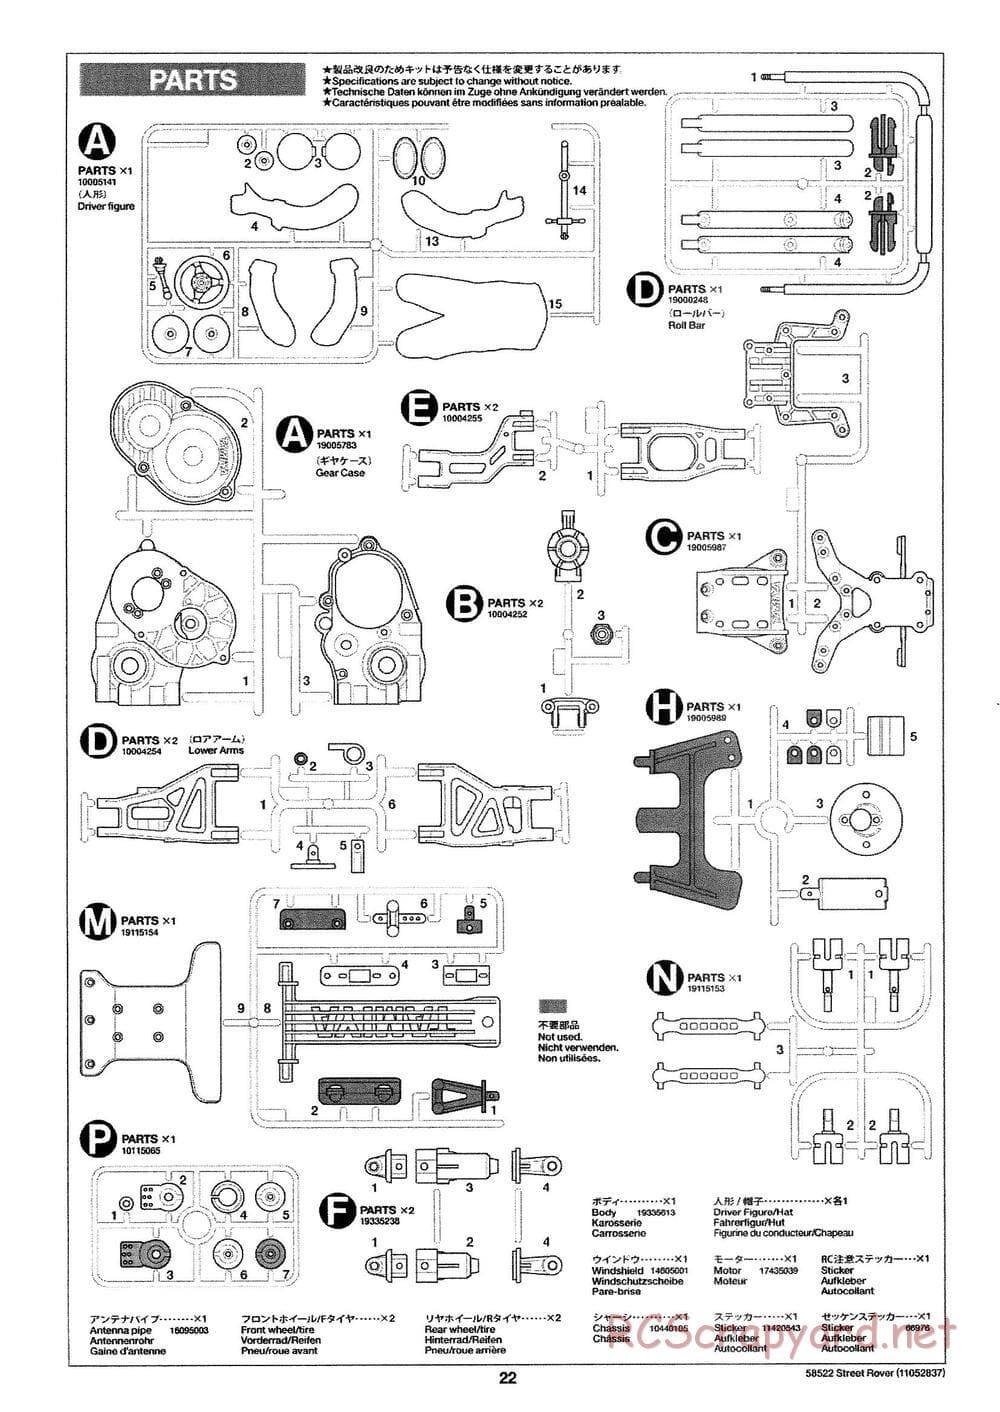 Tamiya - Street Rover Chassis - Manual - Page 23